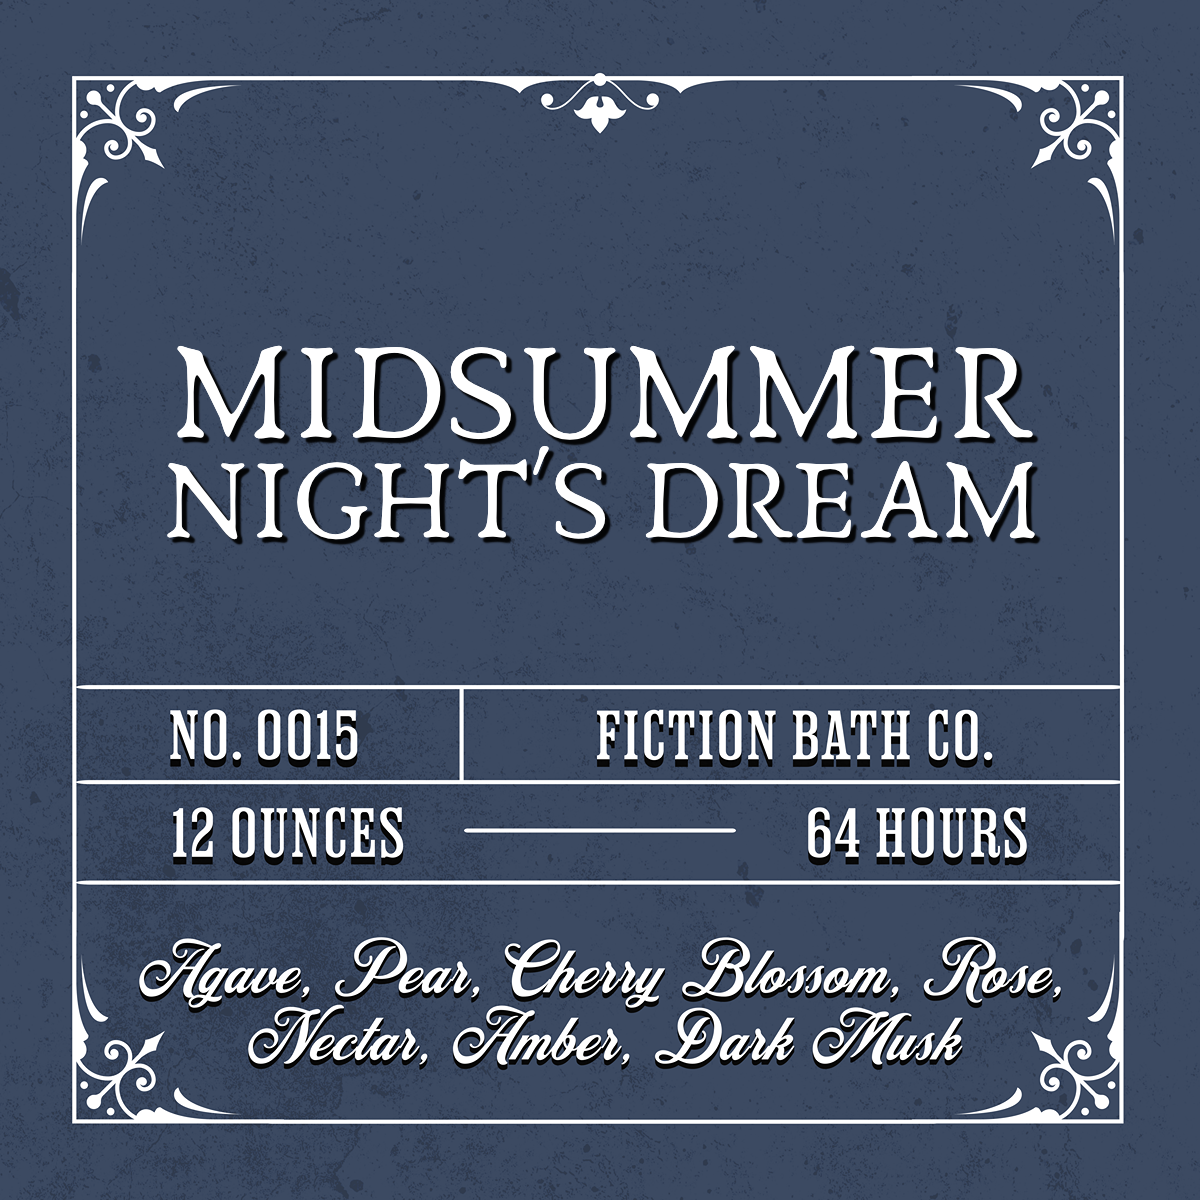 NO. 0015 MIDSUMMER NIGHT'S DREAM